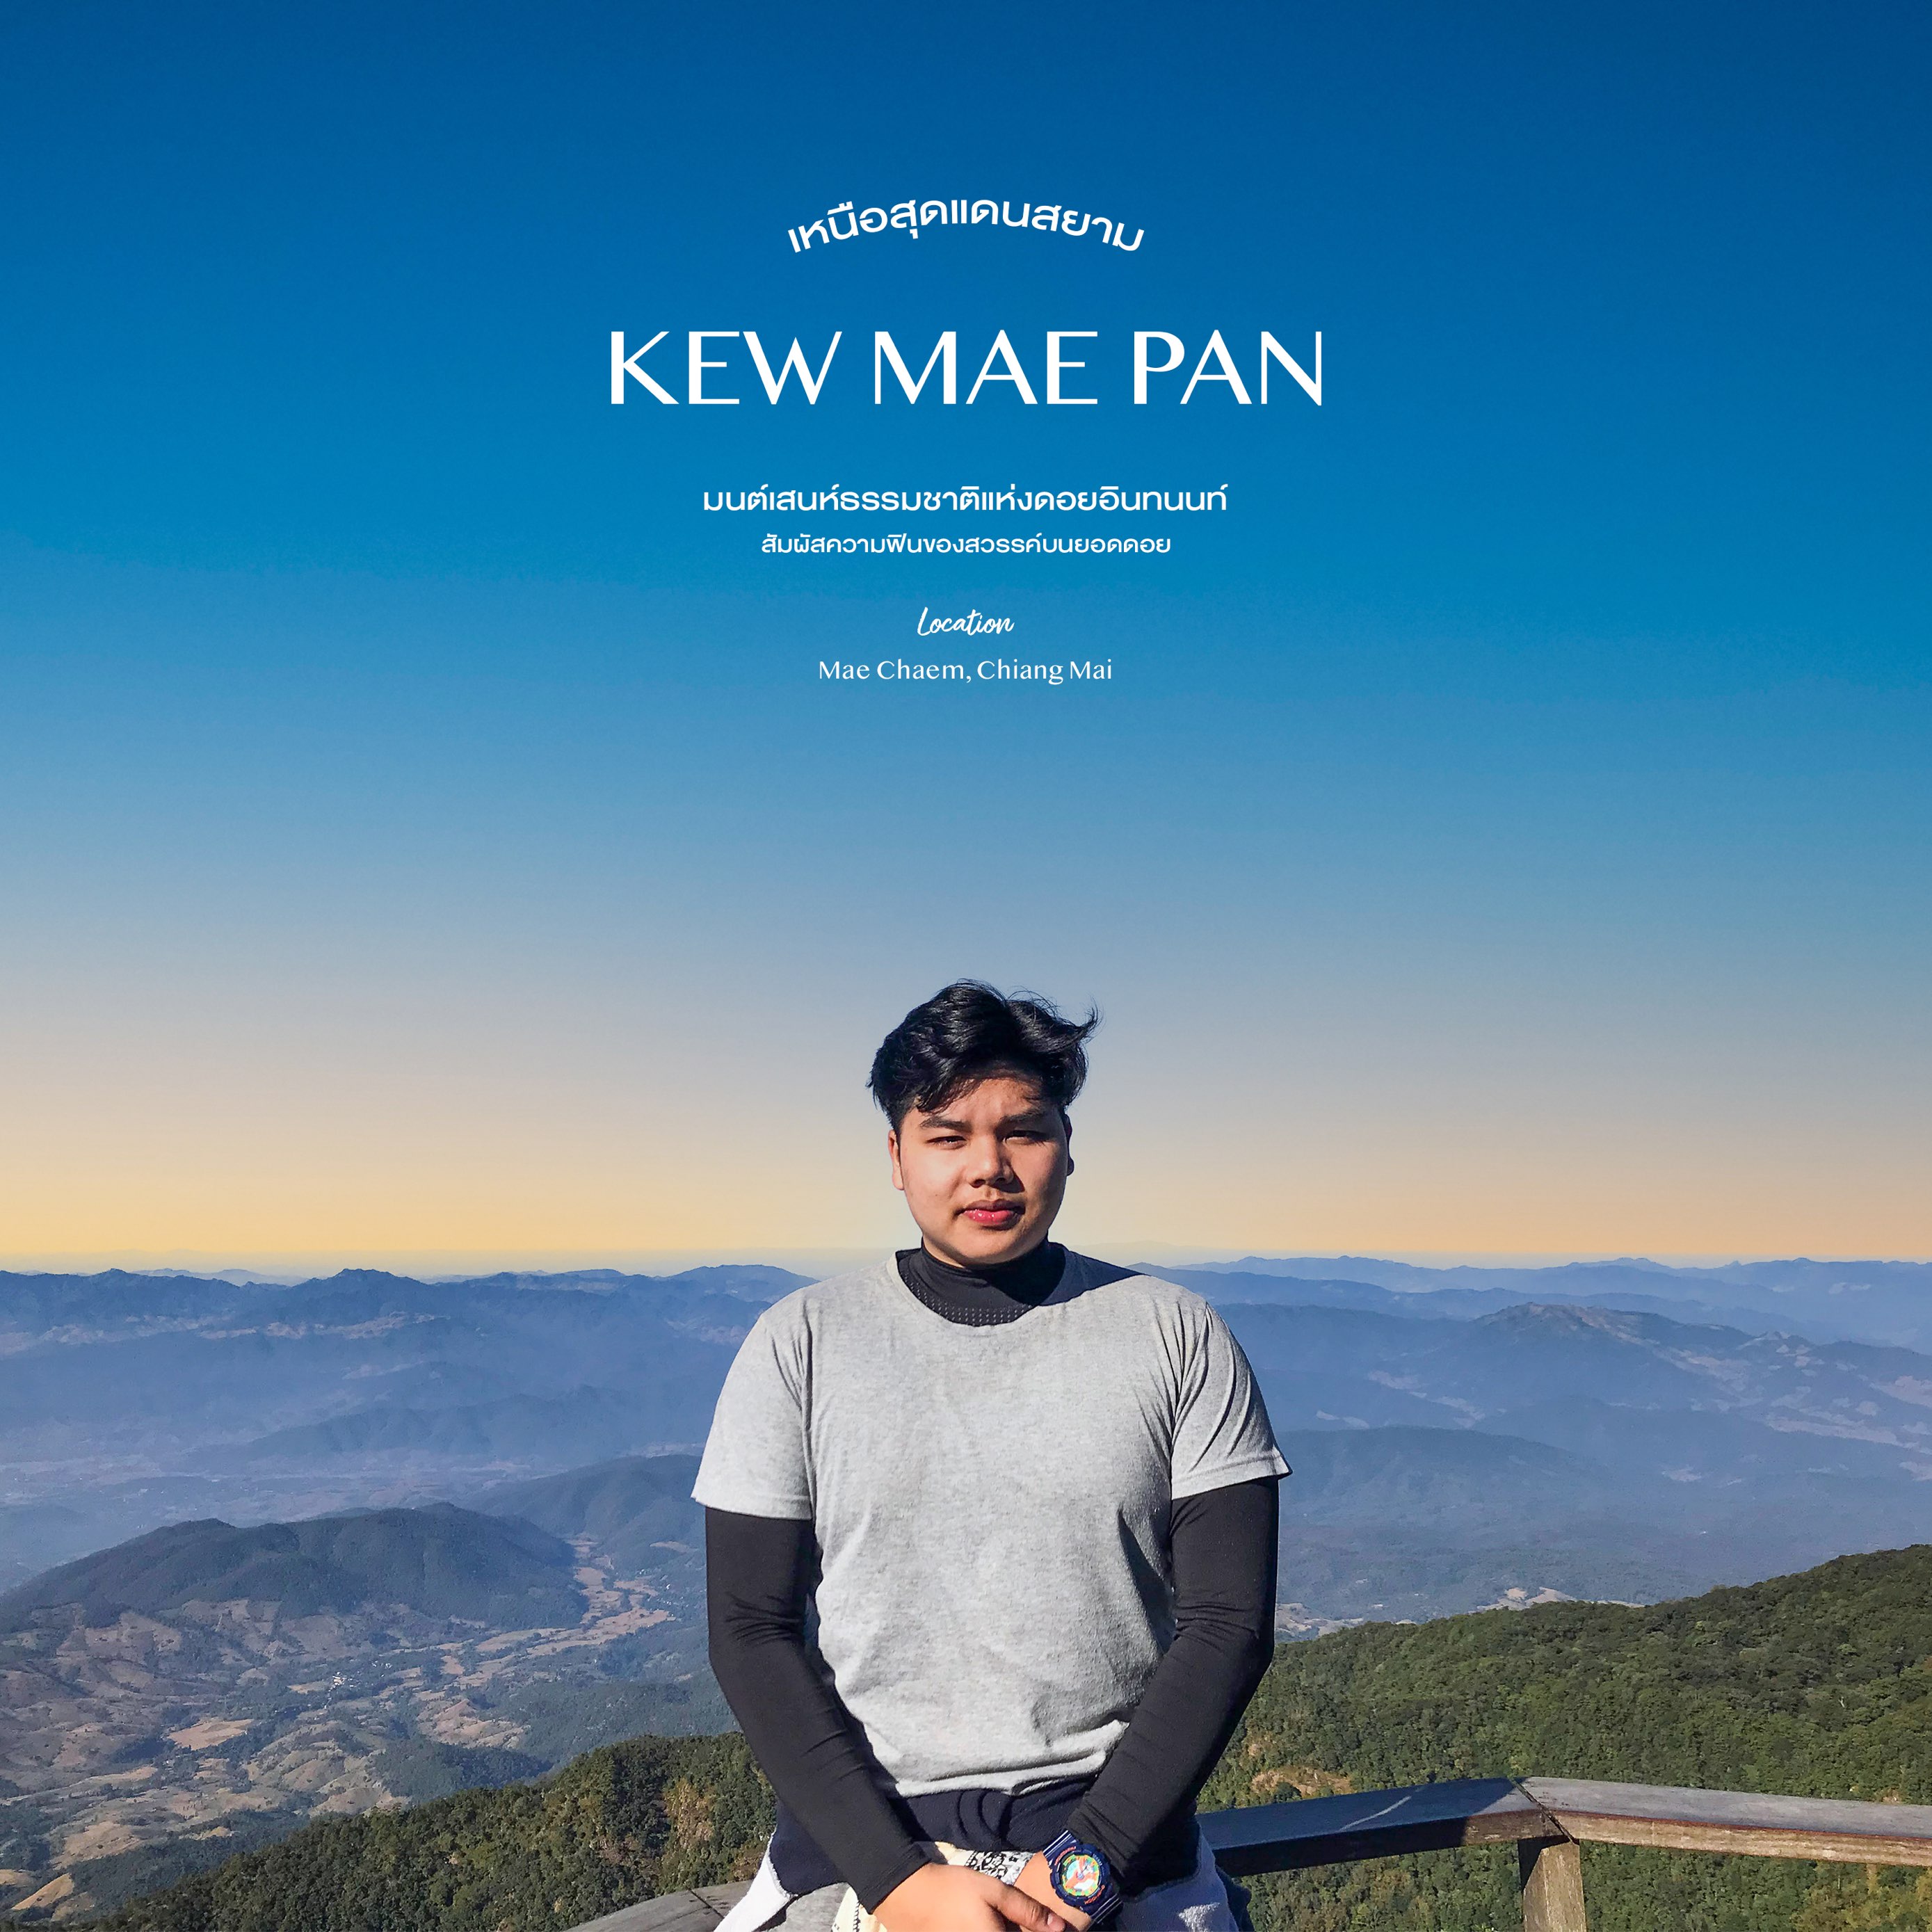 Kew Mae Pan 国家公园 - 在山顶感受寒冷